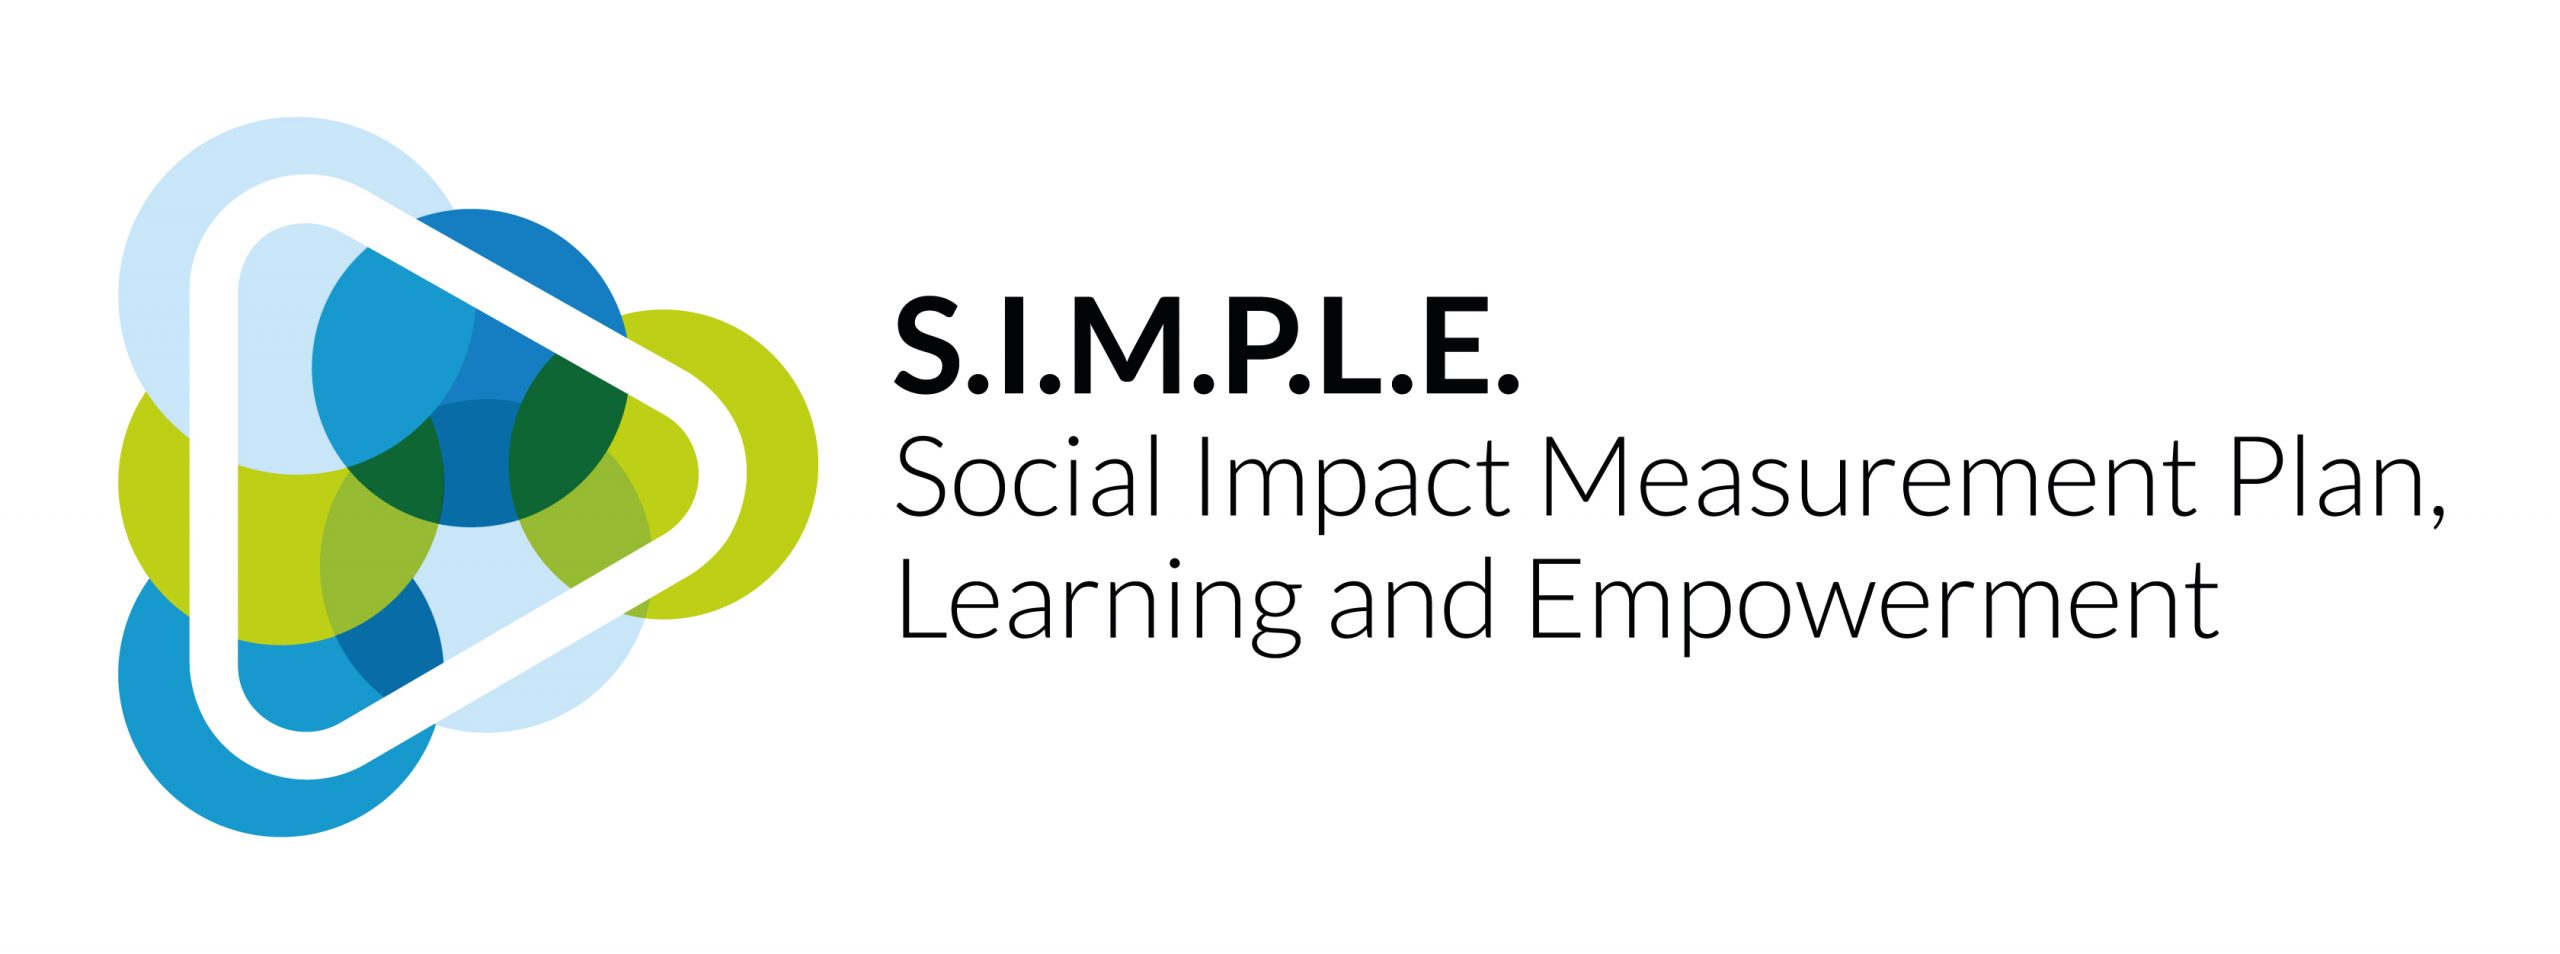 Predstavitev S.I.M.P.L.E. projekta